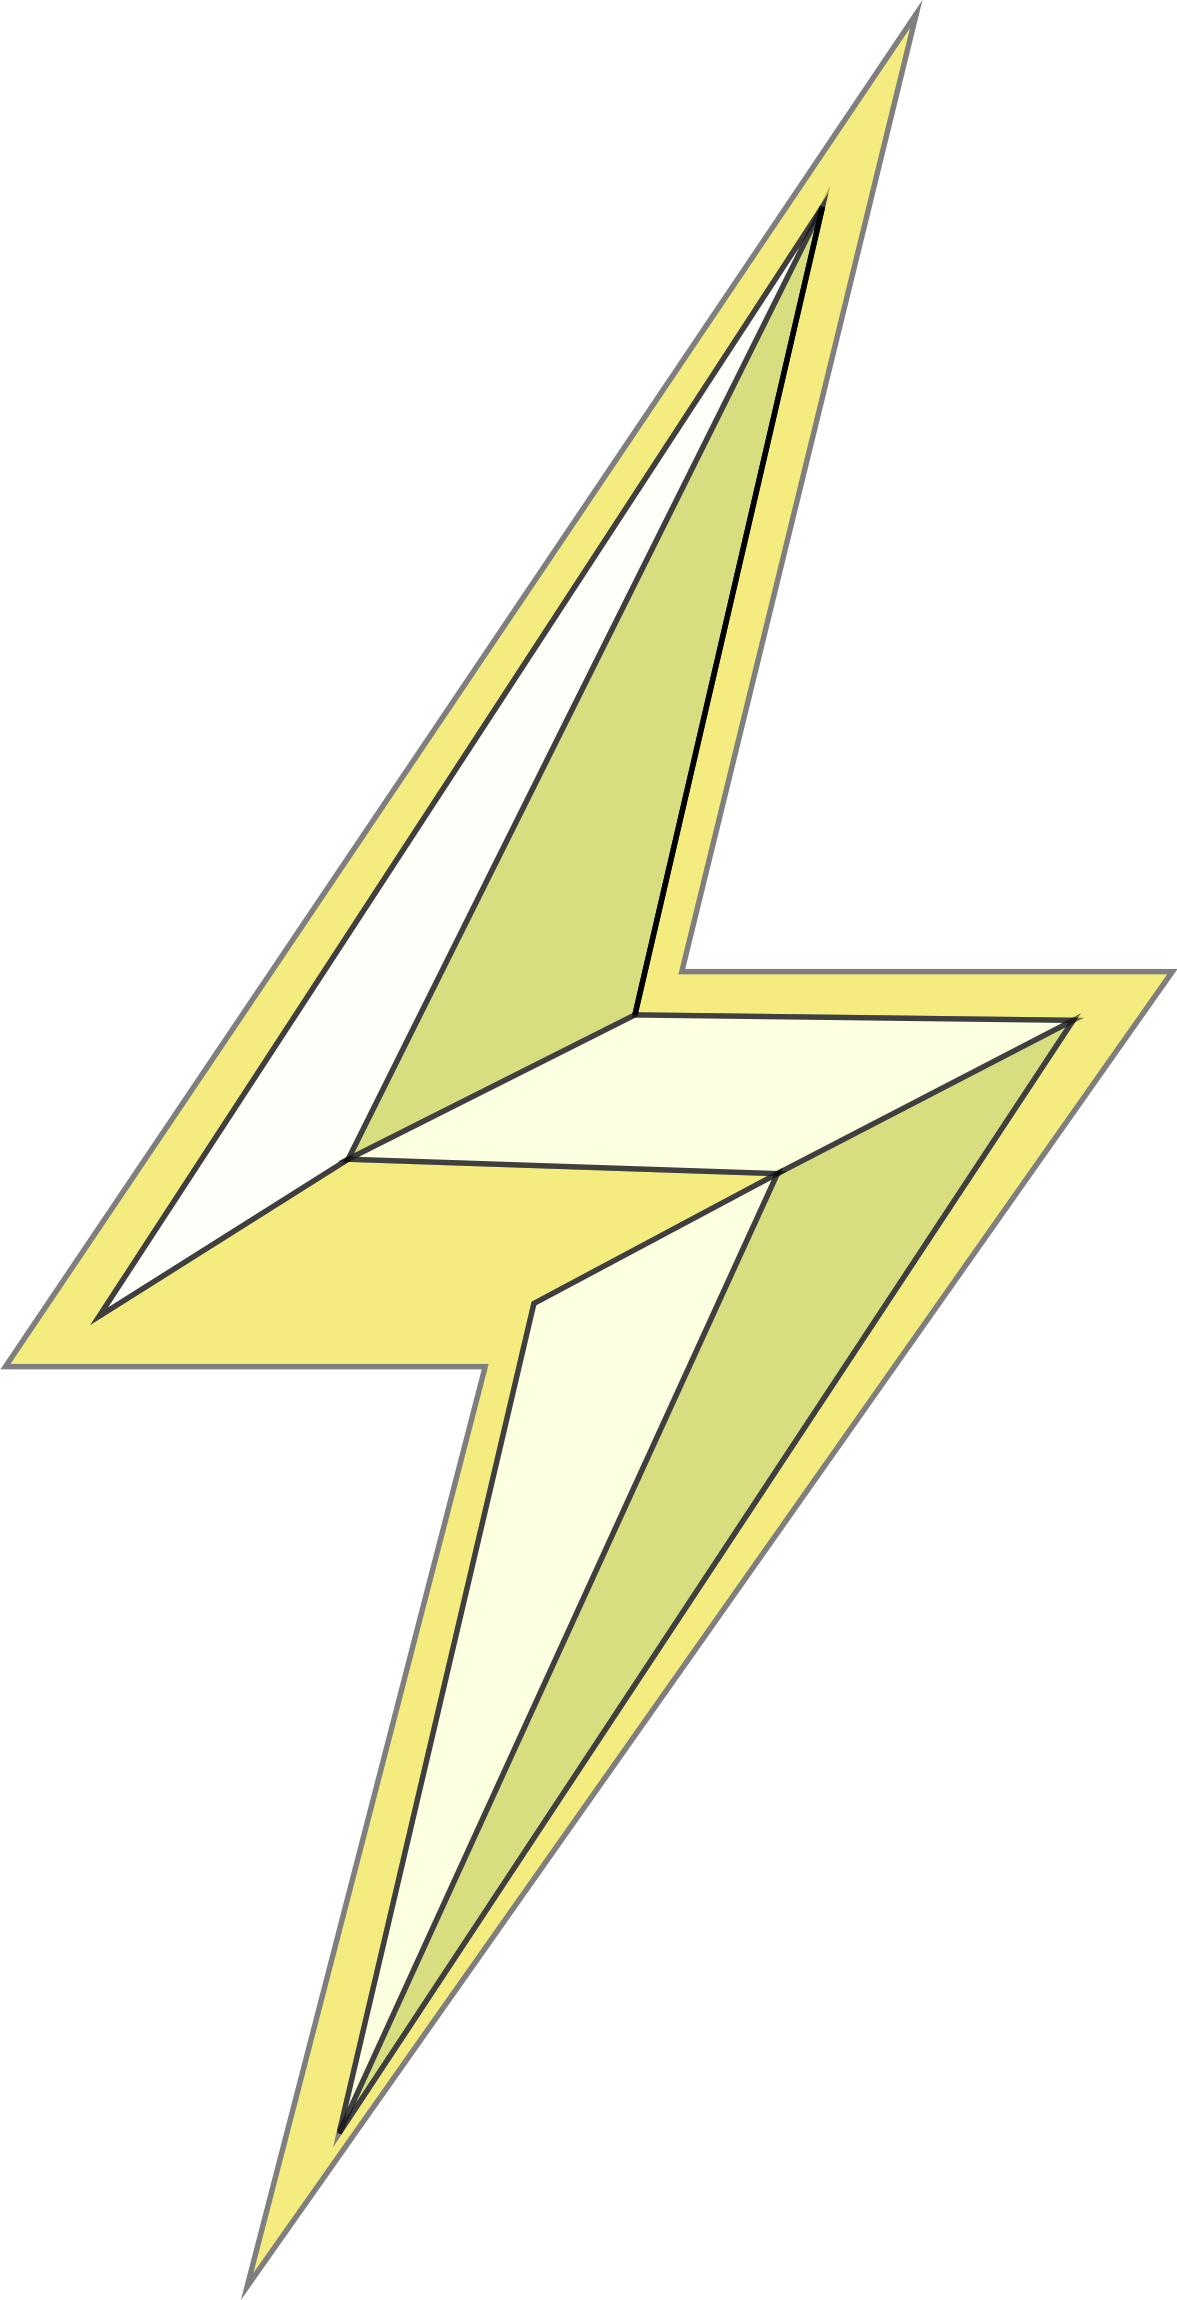 Lightning Bolt PNG Image File